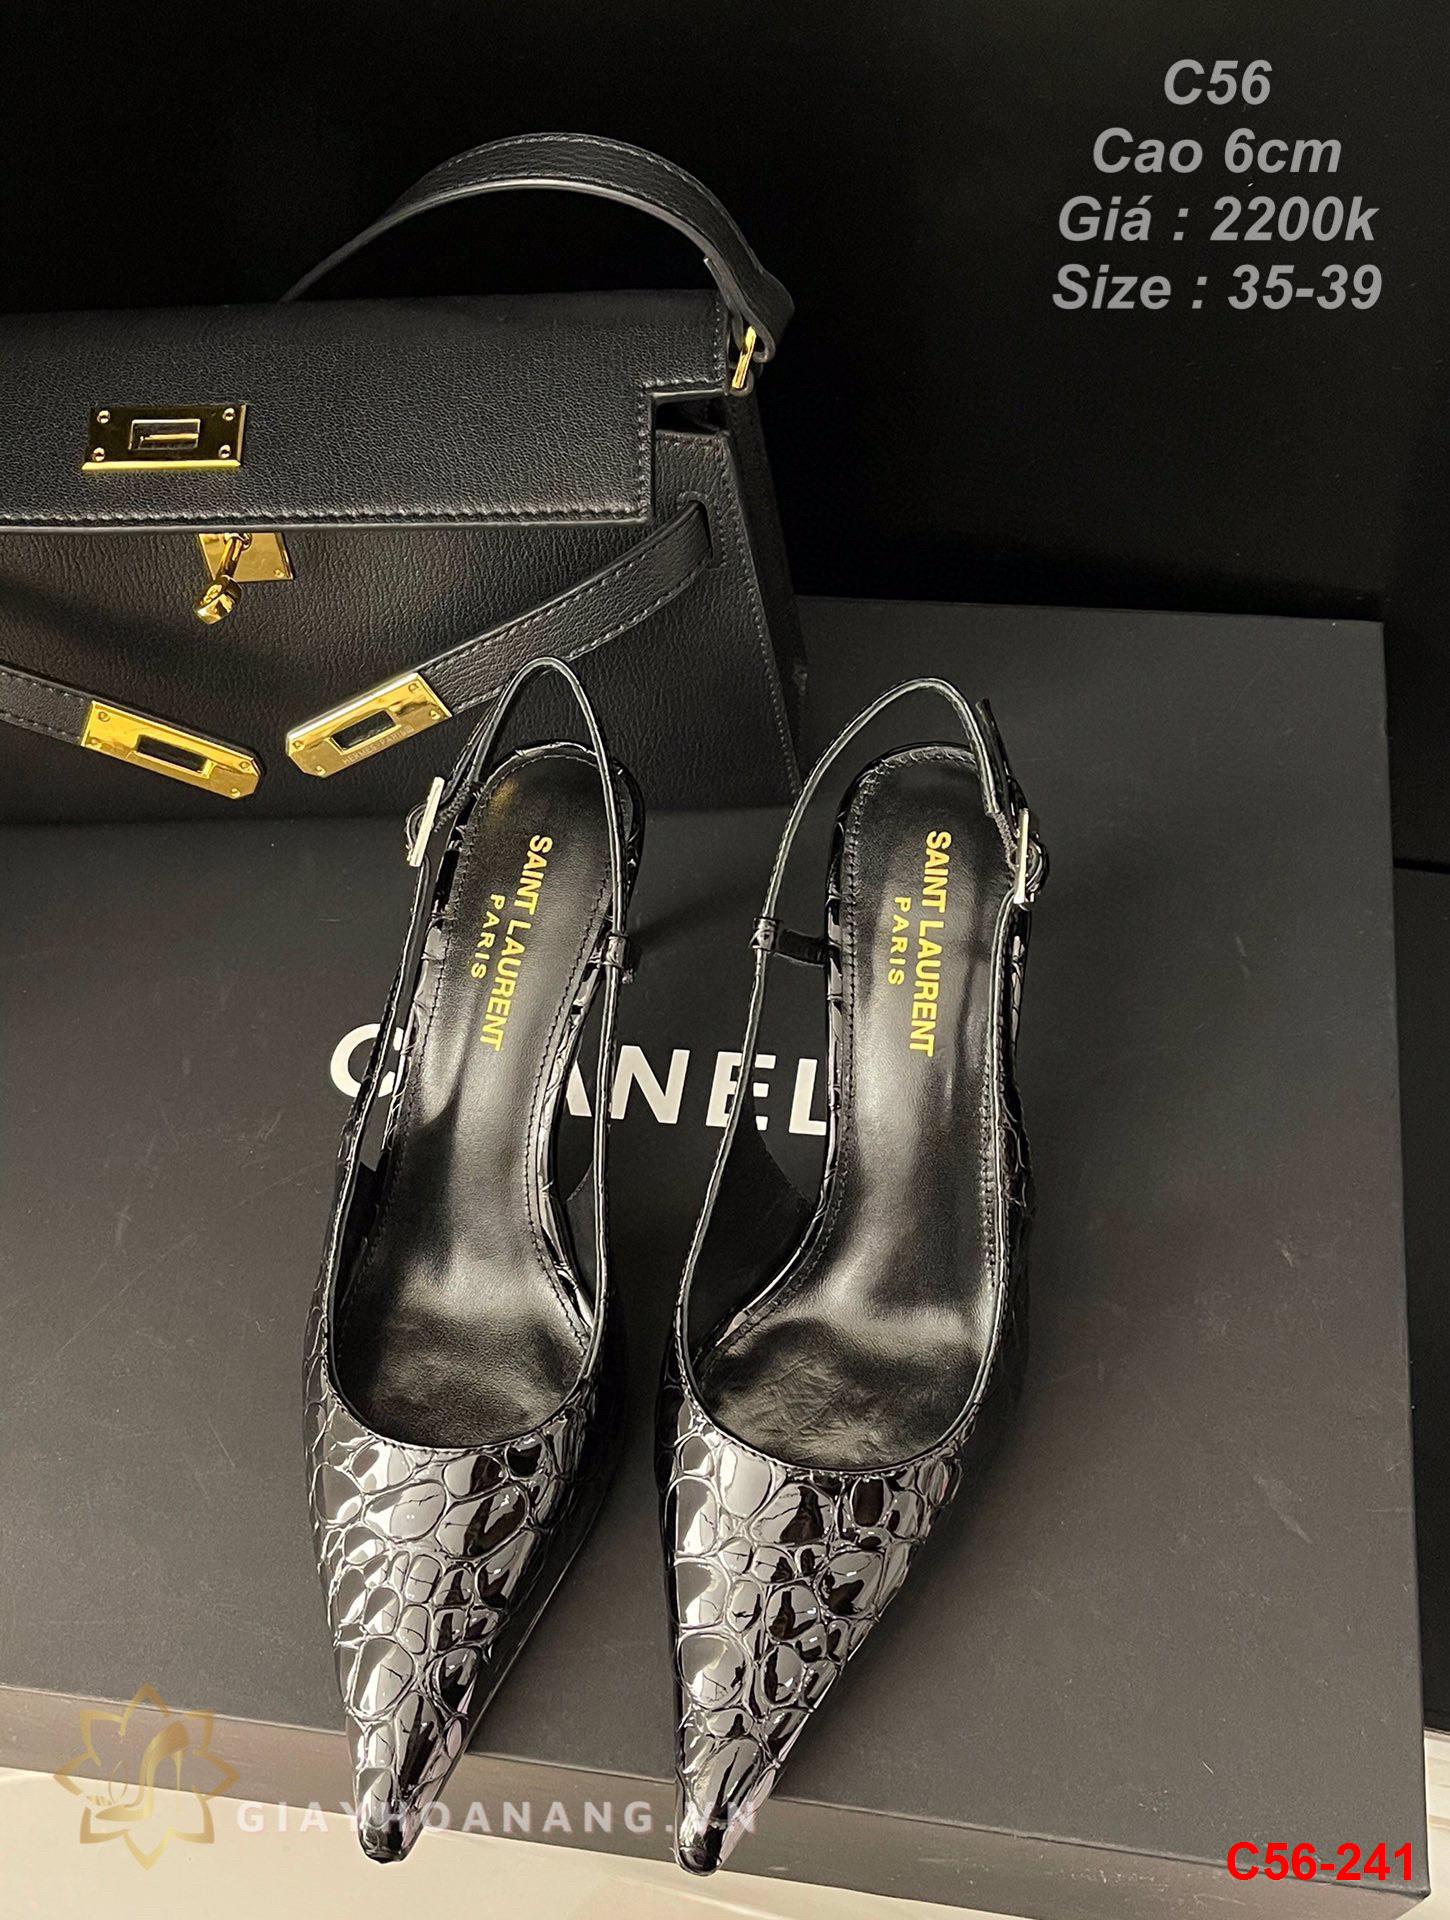 C56-241 Saint Laurent sandal cao 6cm siêu cấp